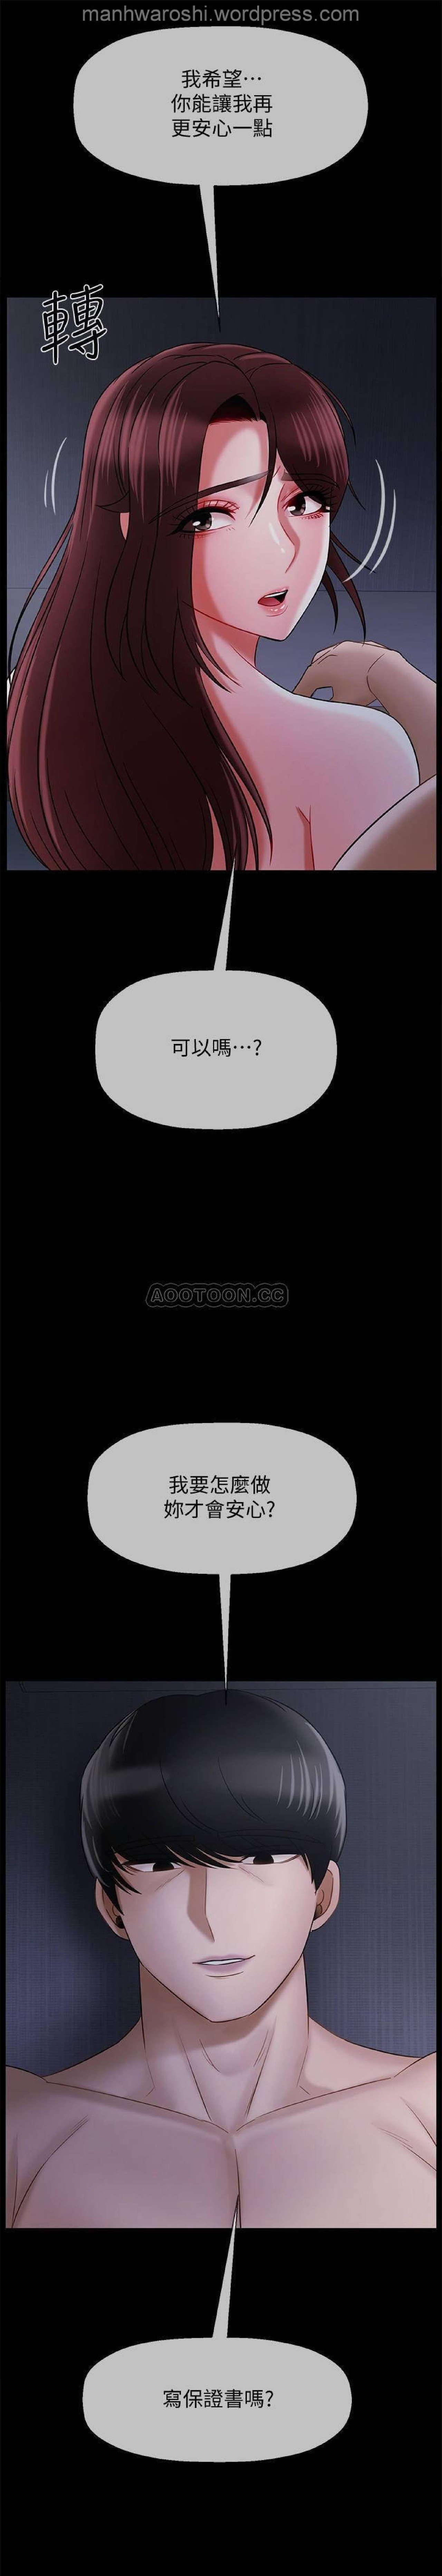 坏老师 | PHYSICAL CLASSROOM 16 [Chinese] Manhwa 17